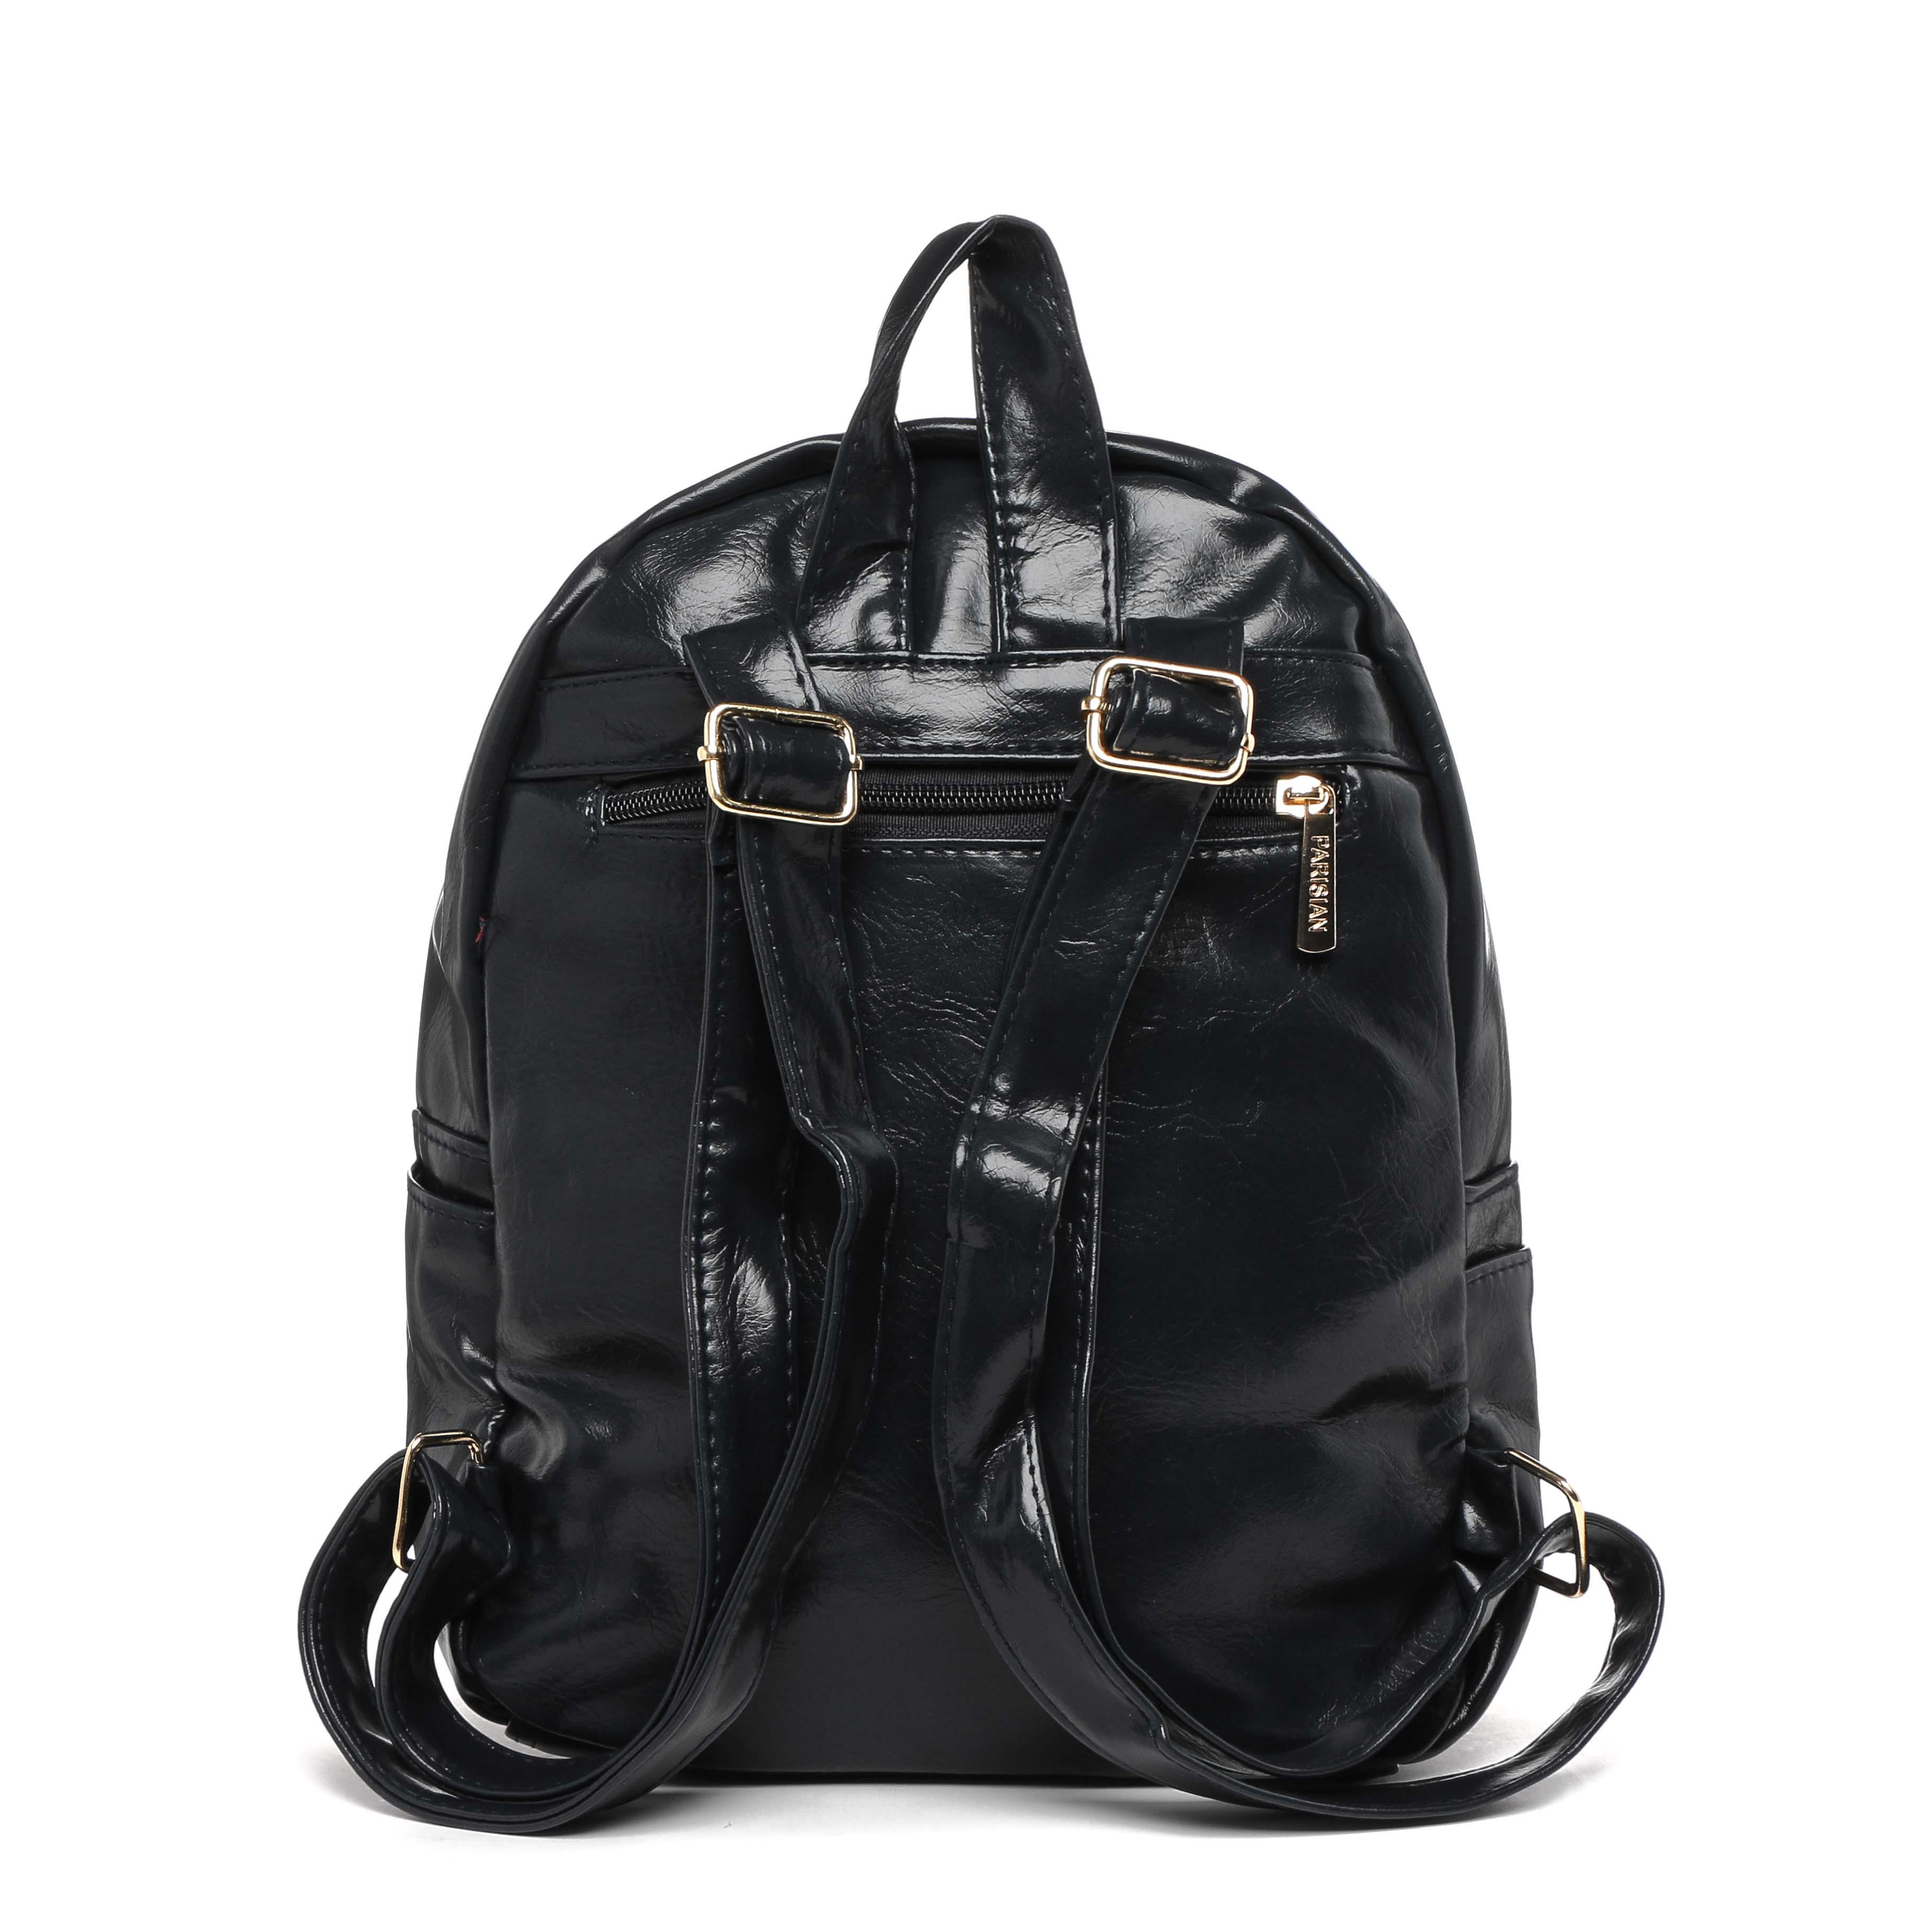 Parisian Ladies' Tanner Backpack in Black